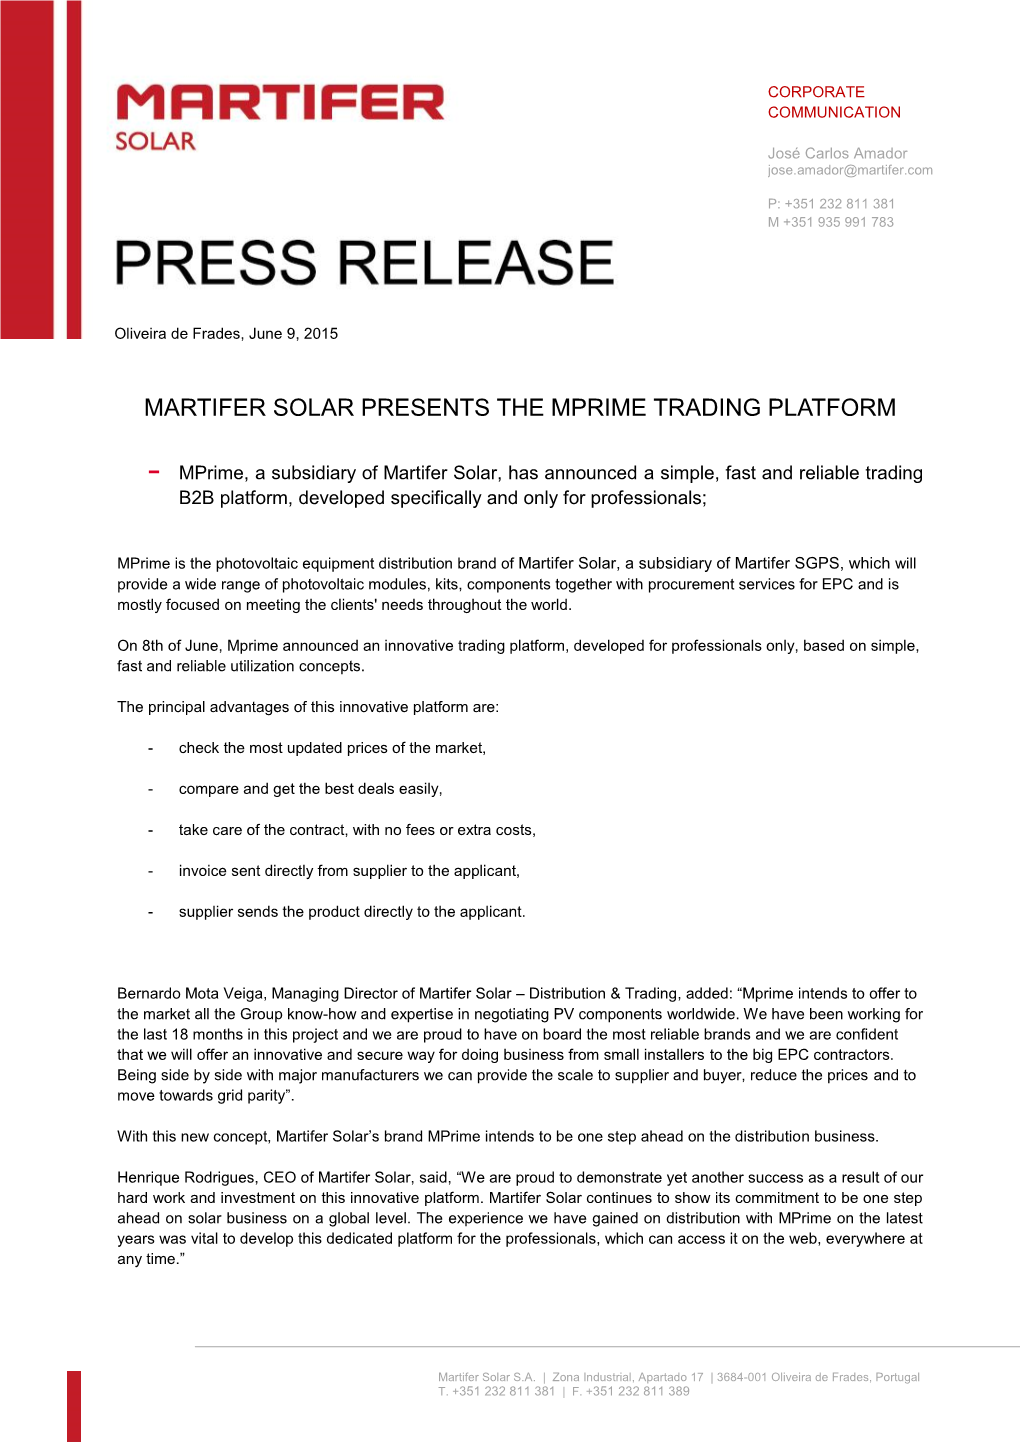 Martifer Solar Presents the Mprime Trading Platform